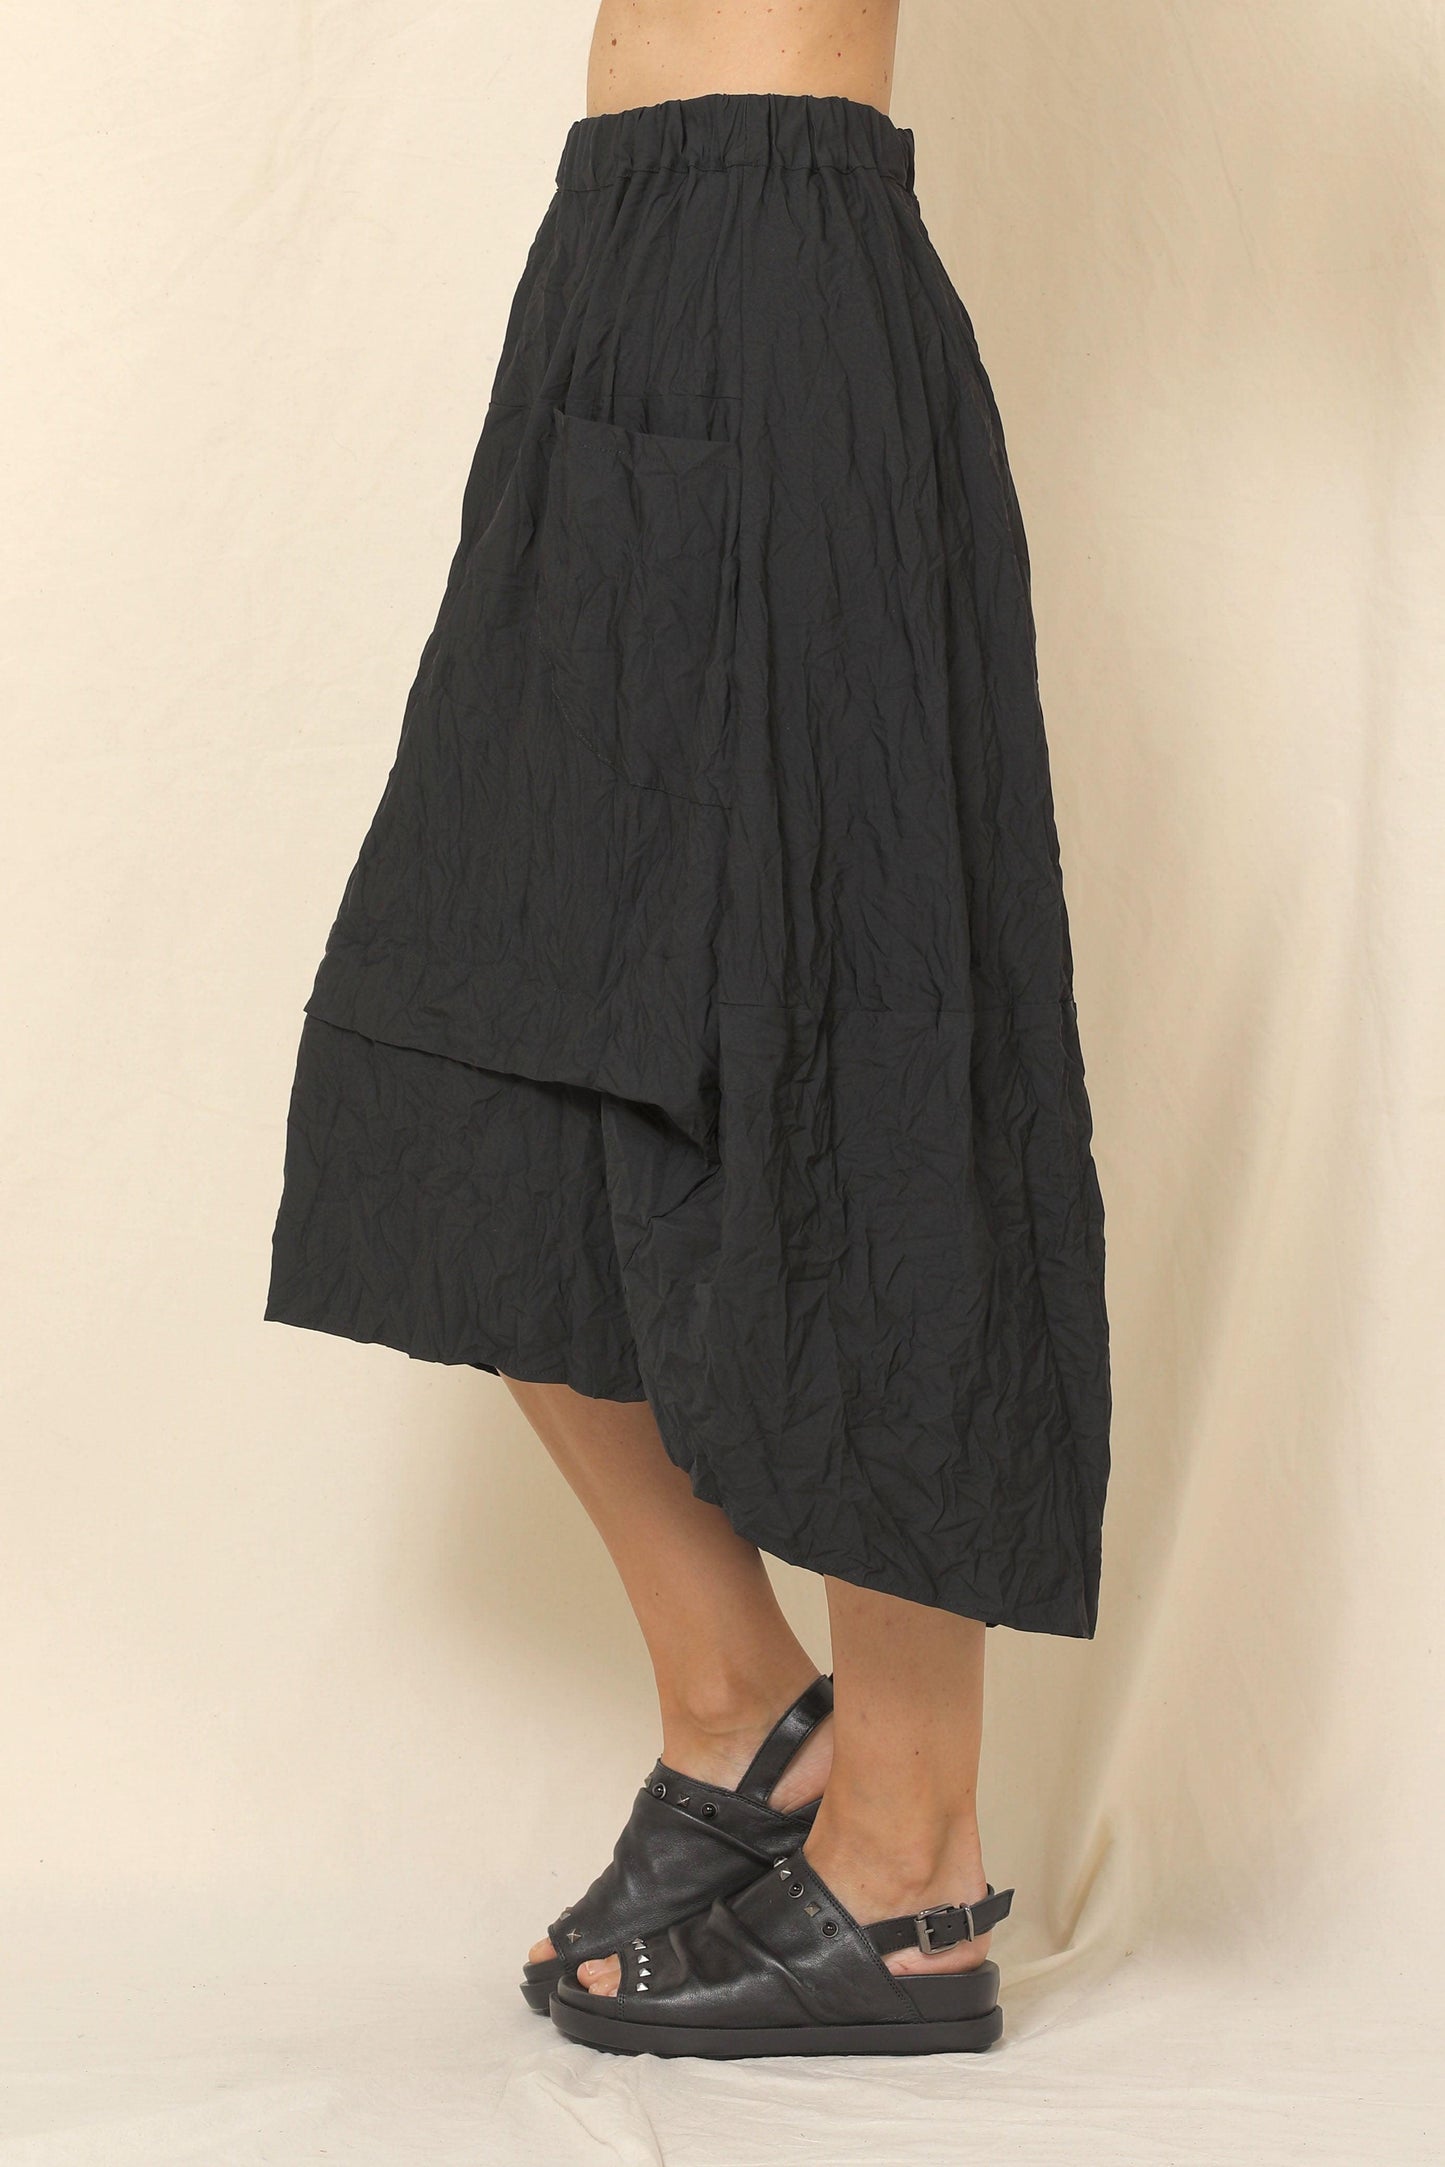 Rebekah Skirt - T57340 Chalet bottom front & side